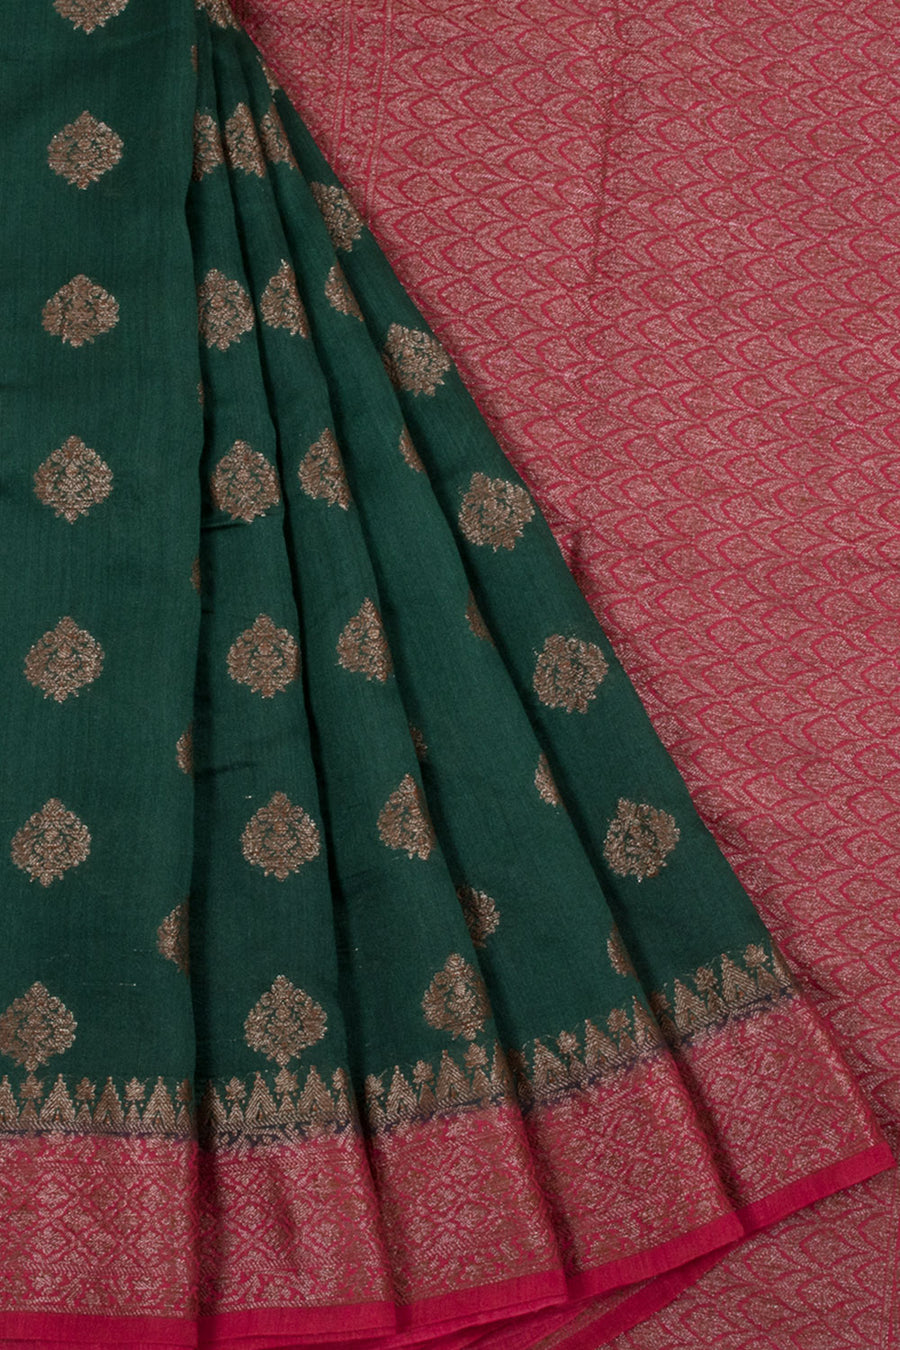 Handloom Banarasi Katrua Muga Silk Saree with Floral Motifs, Floral Border and Pallu